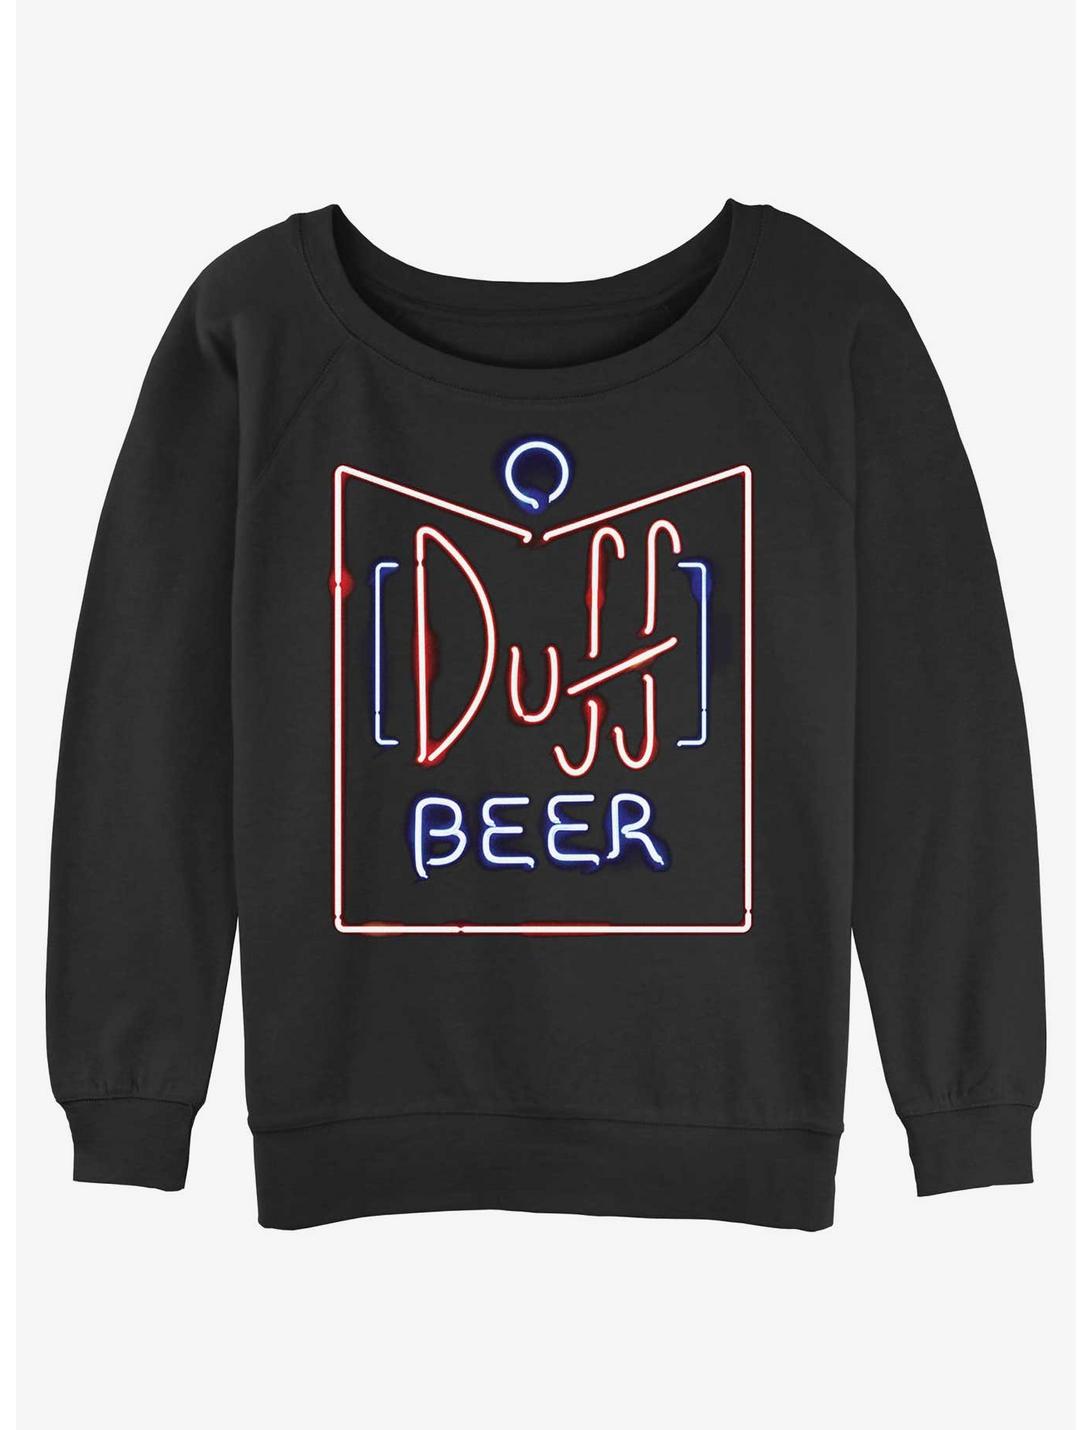 The Simpsons Duff Beer Womens Slouchy Sweatshirt, BLACK, hi-res